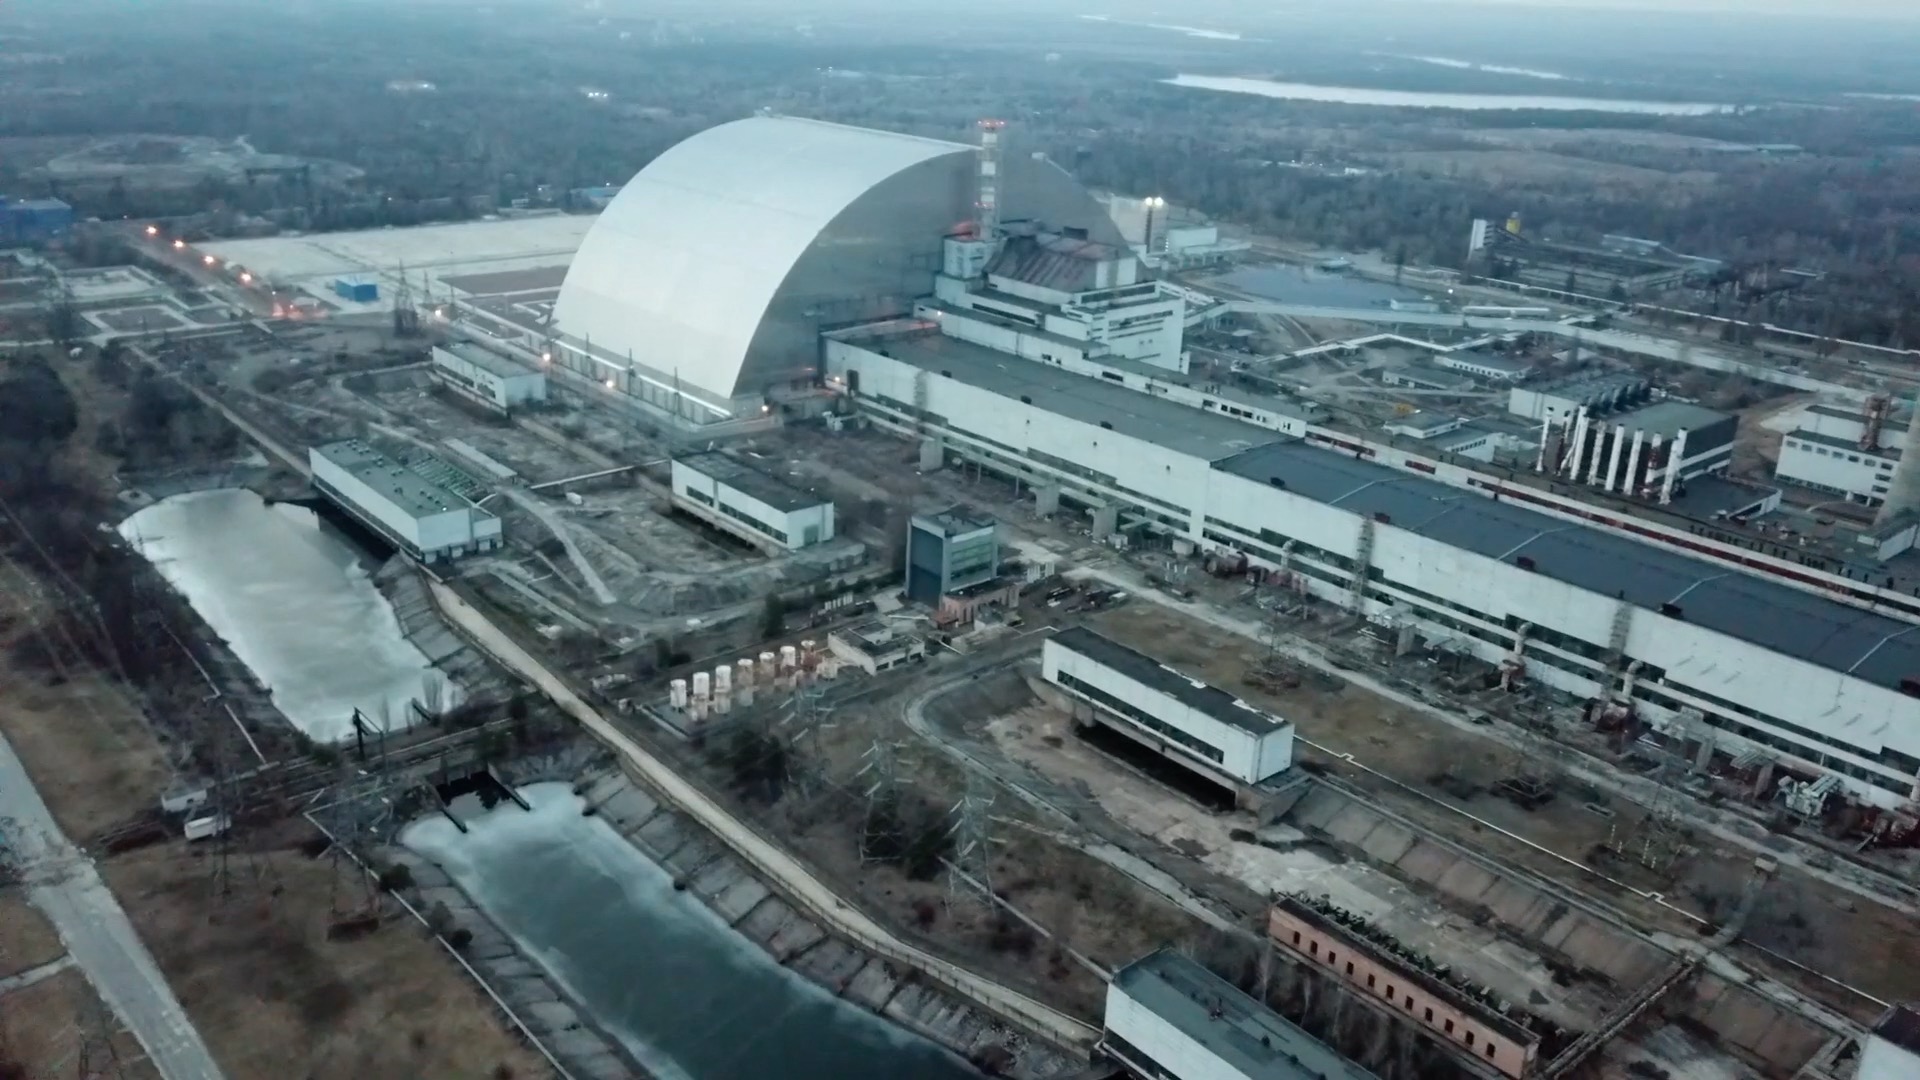 "Bonyolult és feszült" a helyzet a csernobili erőműnél